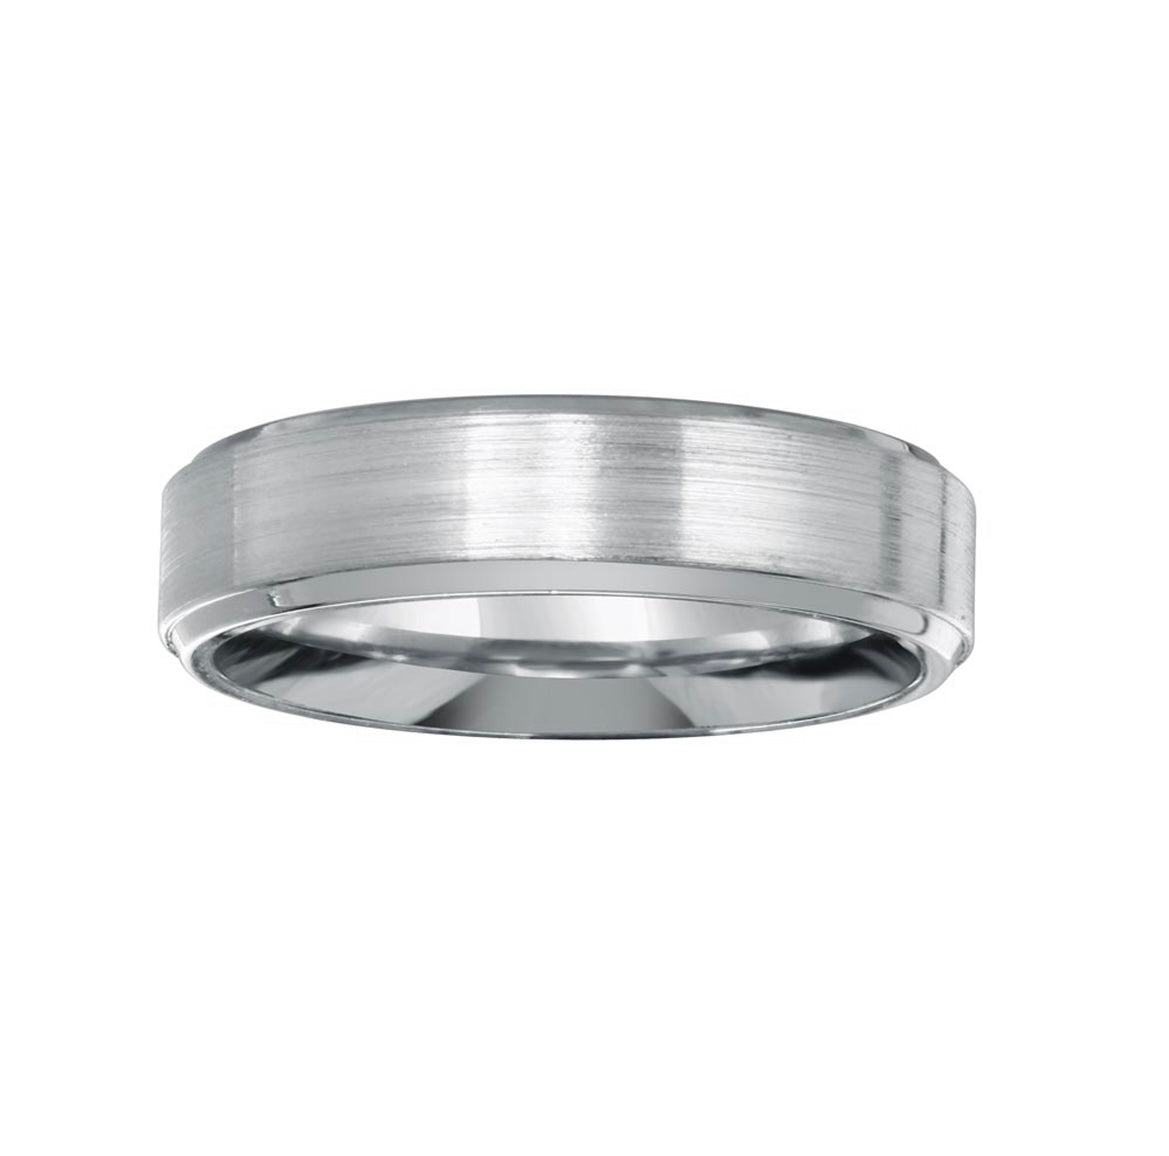 Brushed Rhodium Finish Ring - 7mm